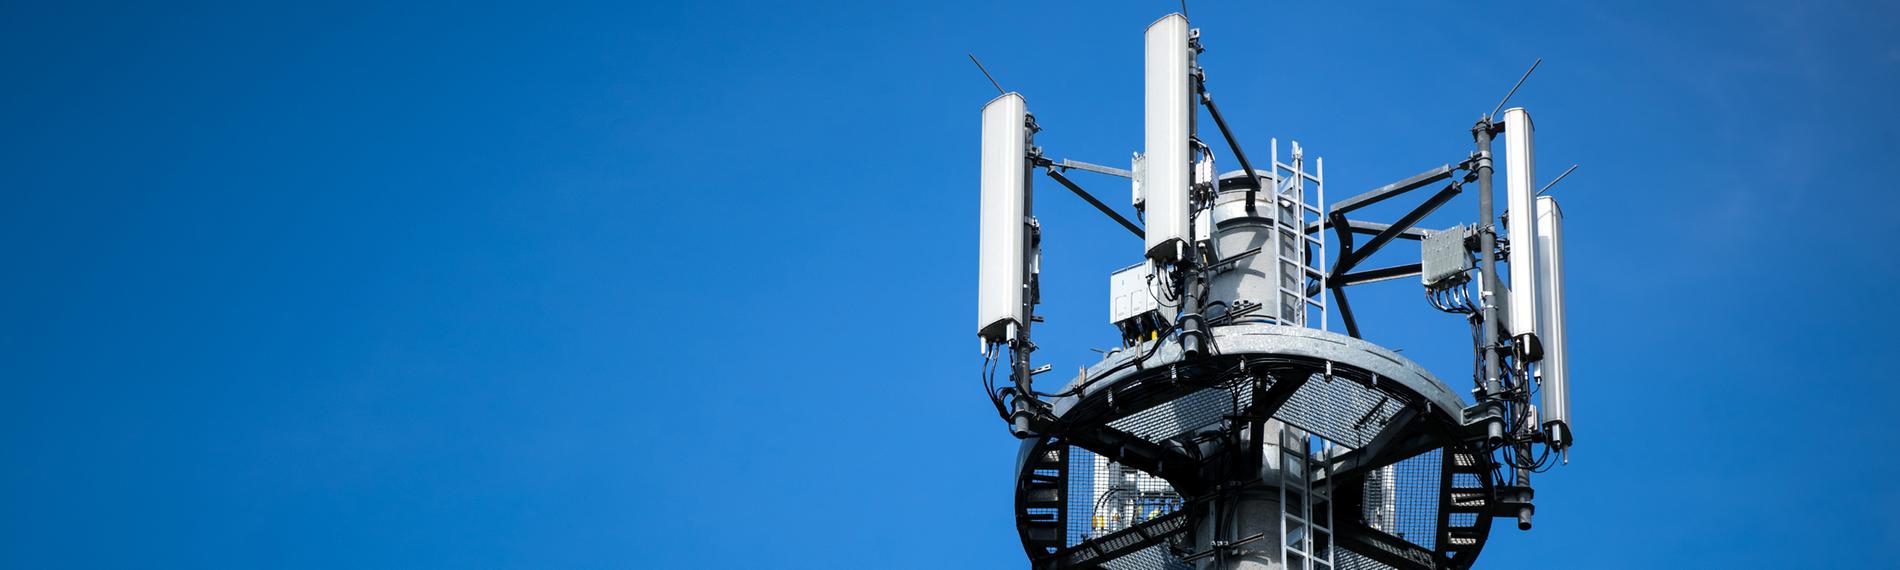 Ein Mast mit verschiedenen Antennen von Mobilfunkanbietern